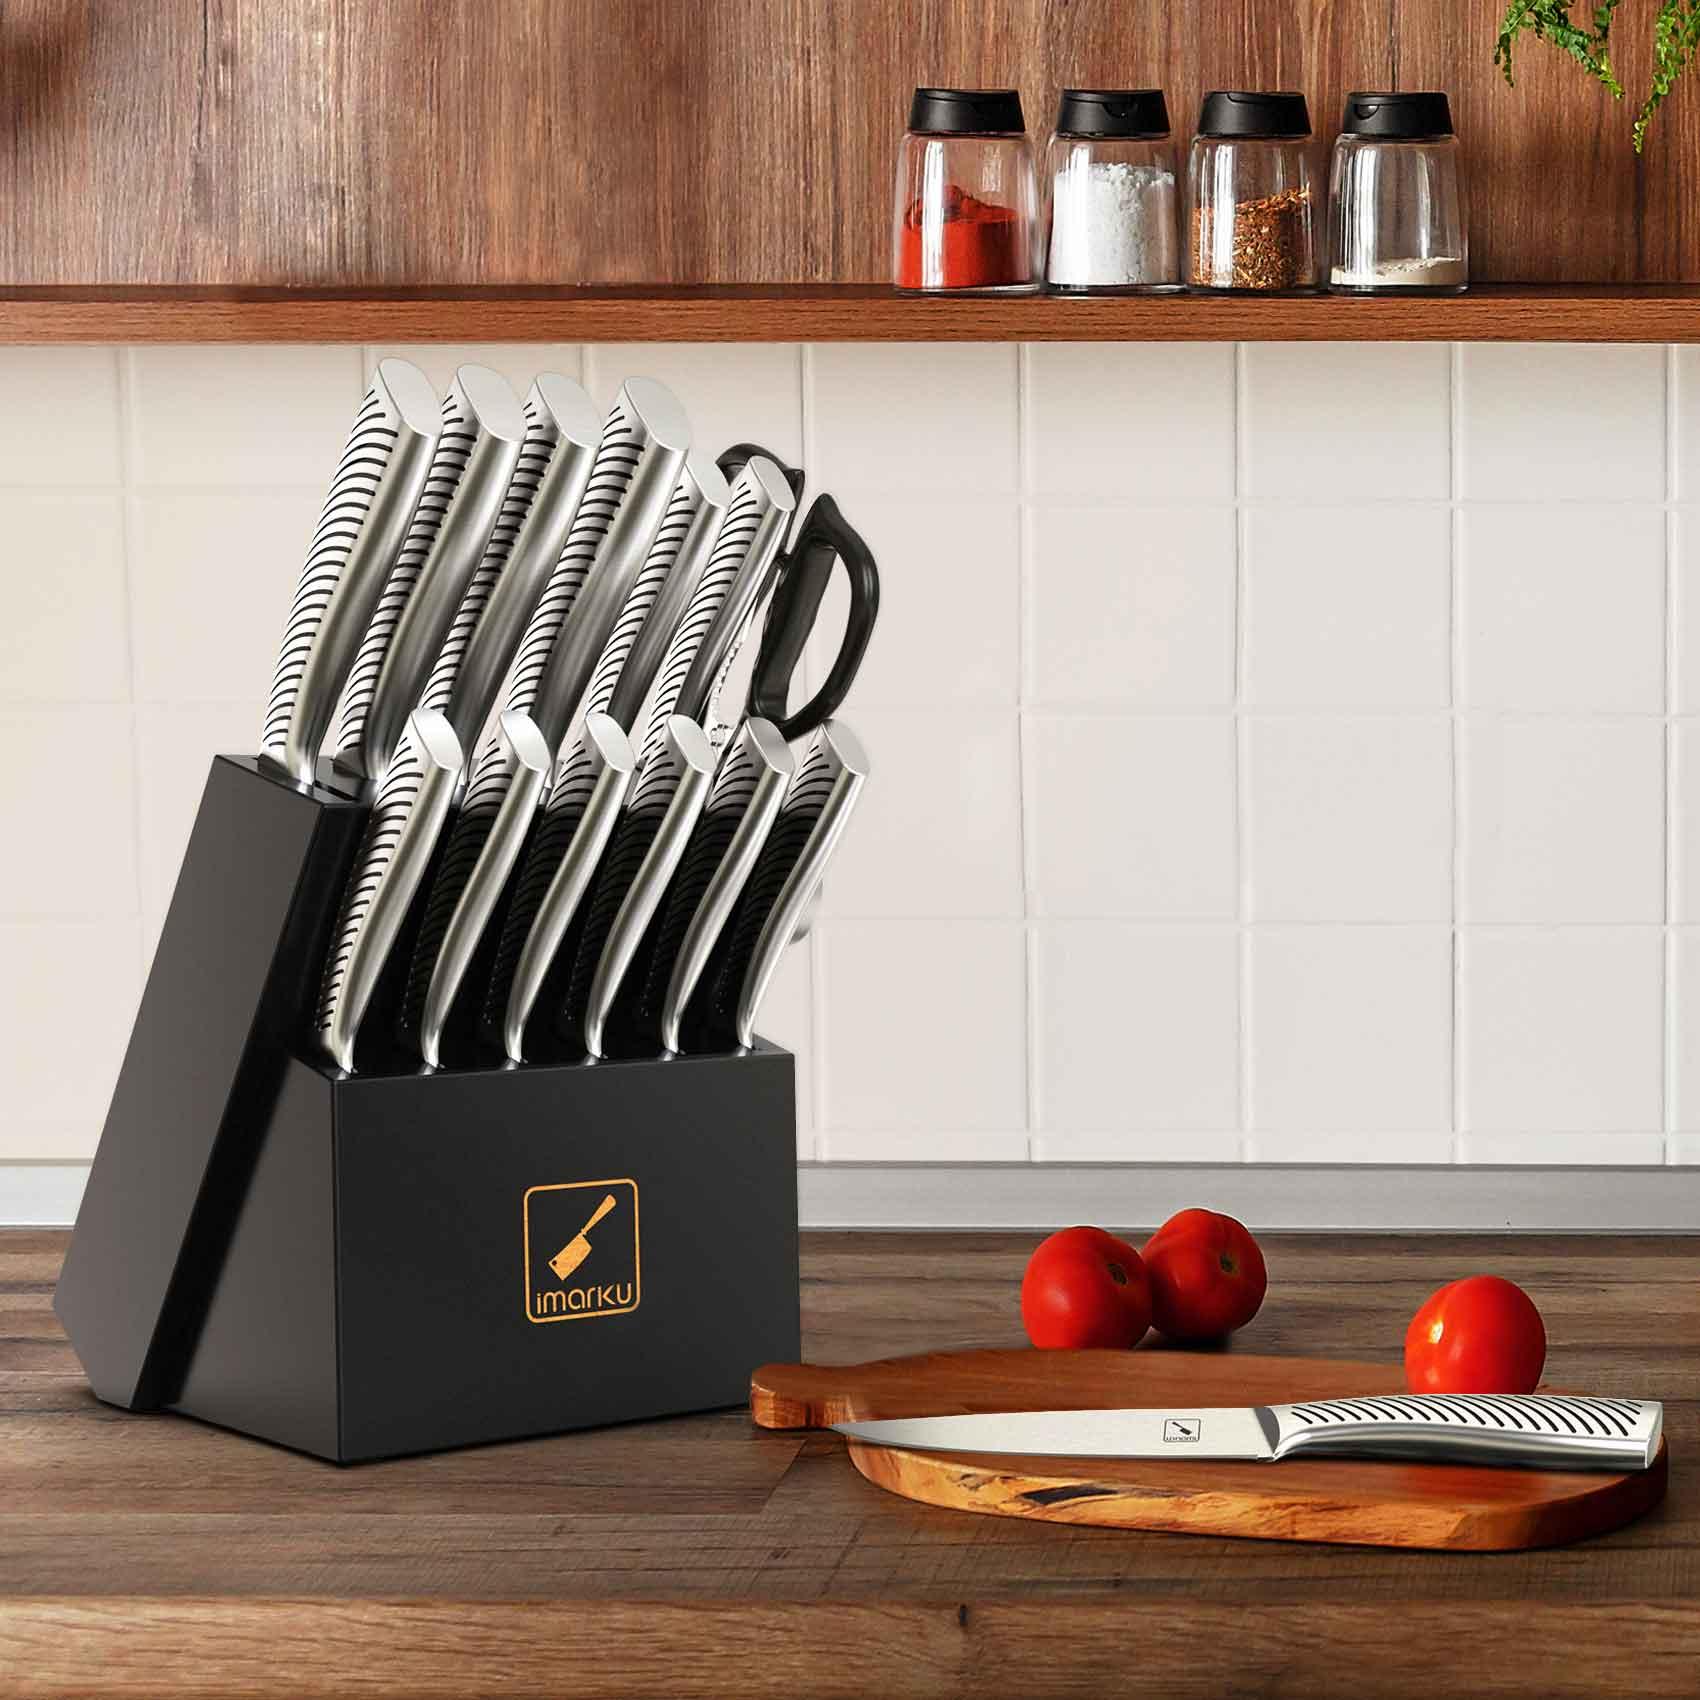 Kitchenaid Gourmet 14-Piece Stainless Steel Kitchen Knife Block Set kitchen knife  set knife set kitchen